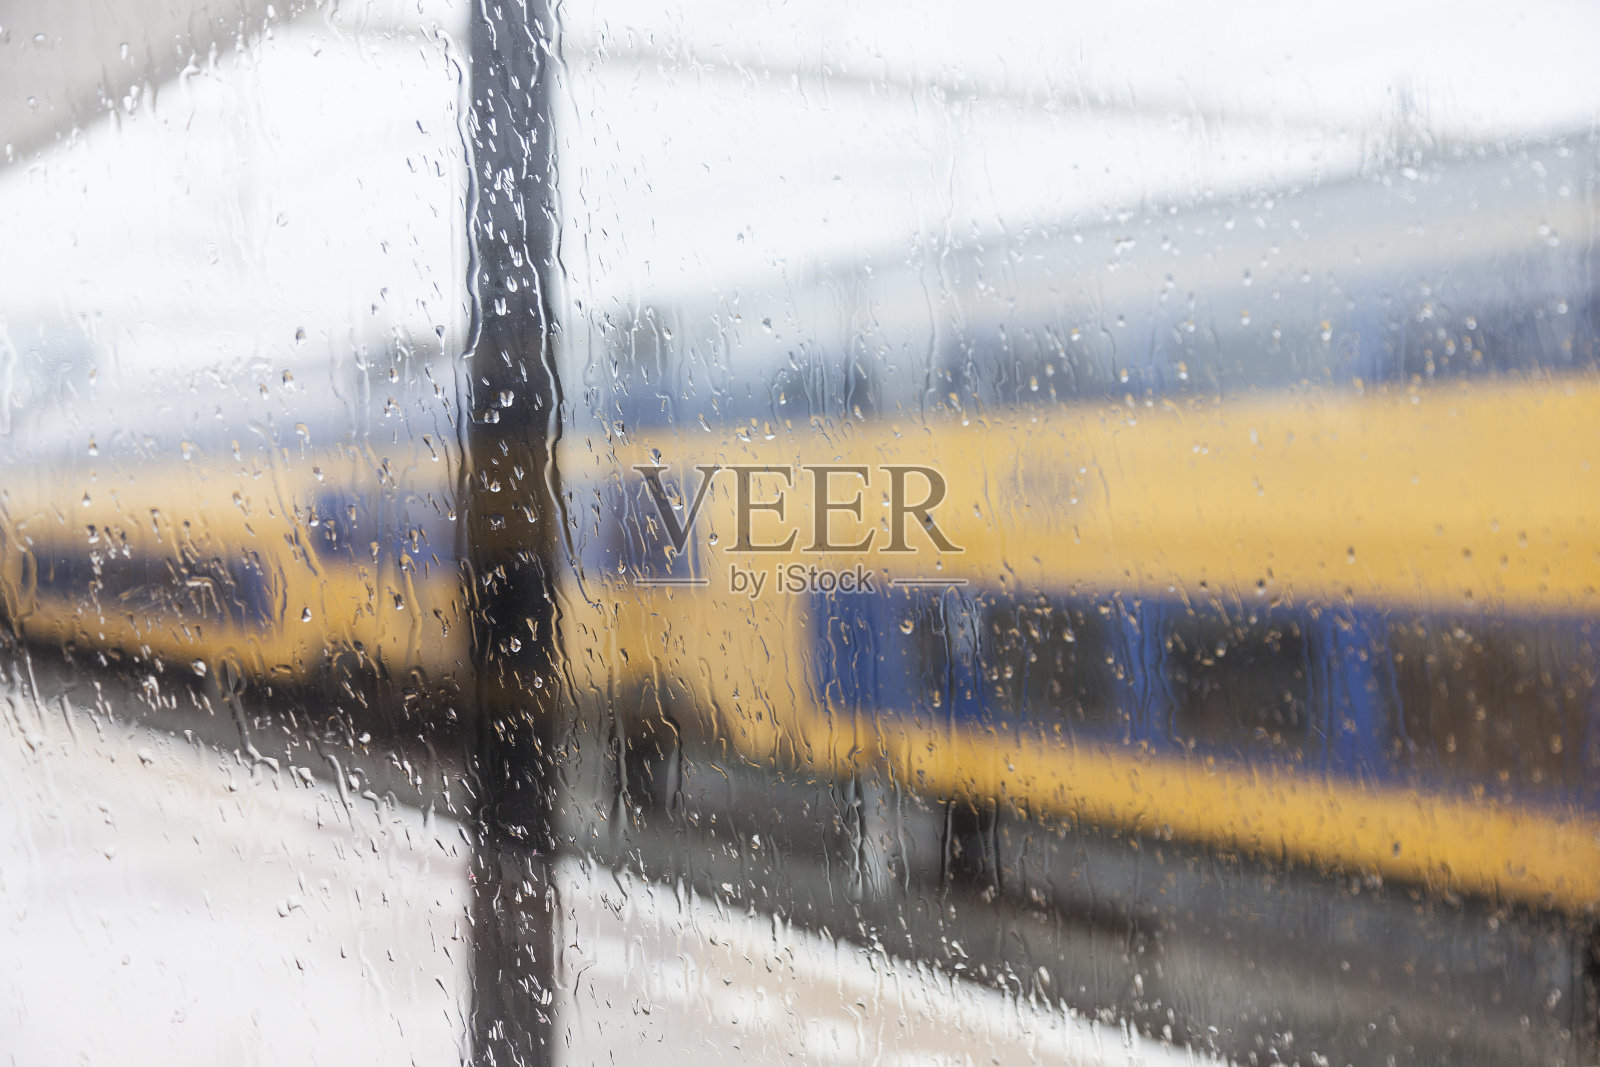 荷兰乌得勒支镇瓦兹里金火车站照片摄影图片